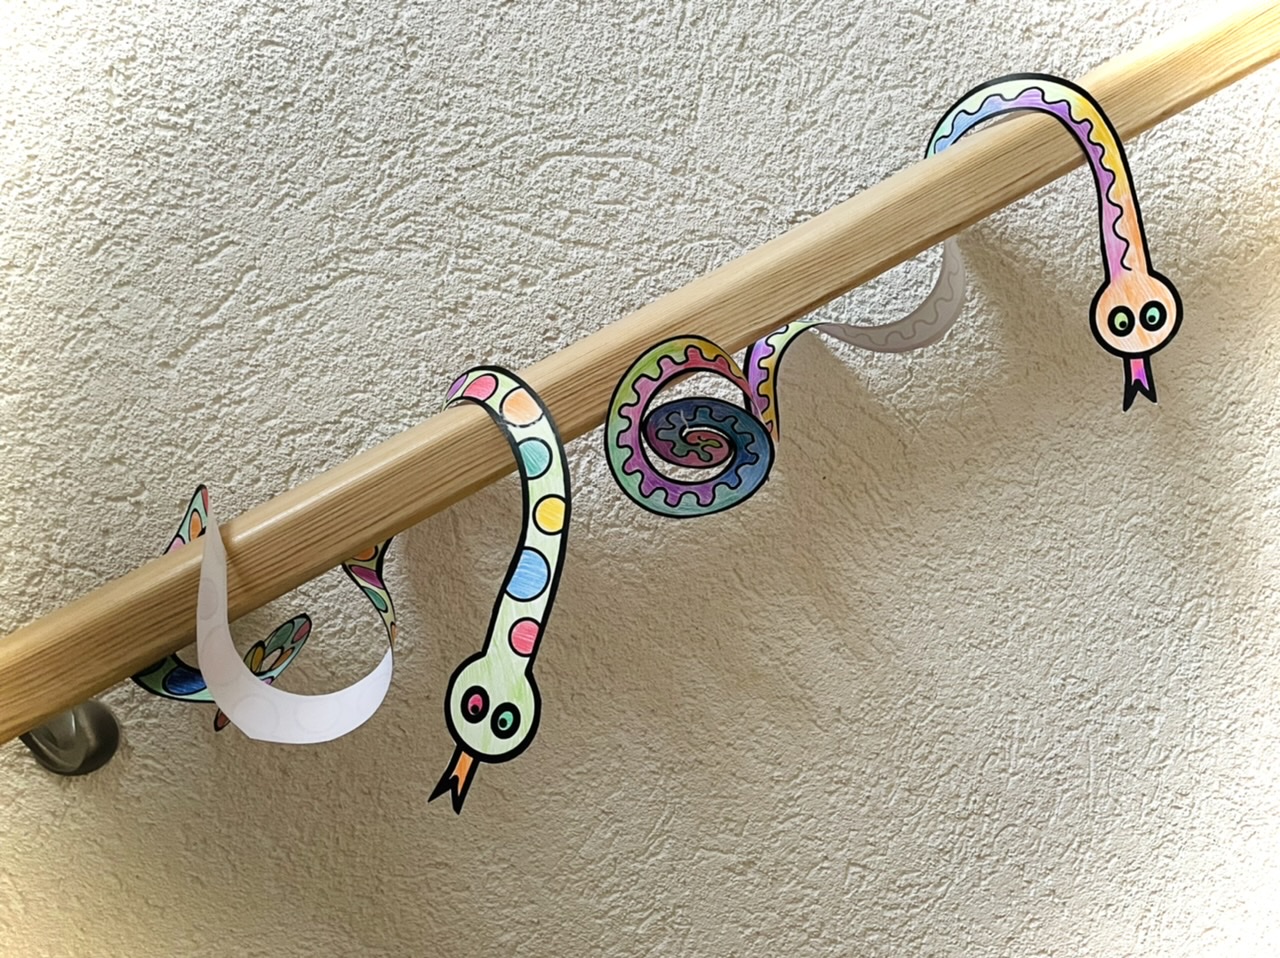 Bild zum Schritt 17 für das Bastel- und DIY-Abenteuer für Kinder: 'Oder ihr verwendet die Schlangen als Girlande zum Aufhängen oder...'